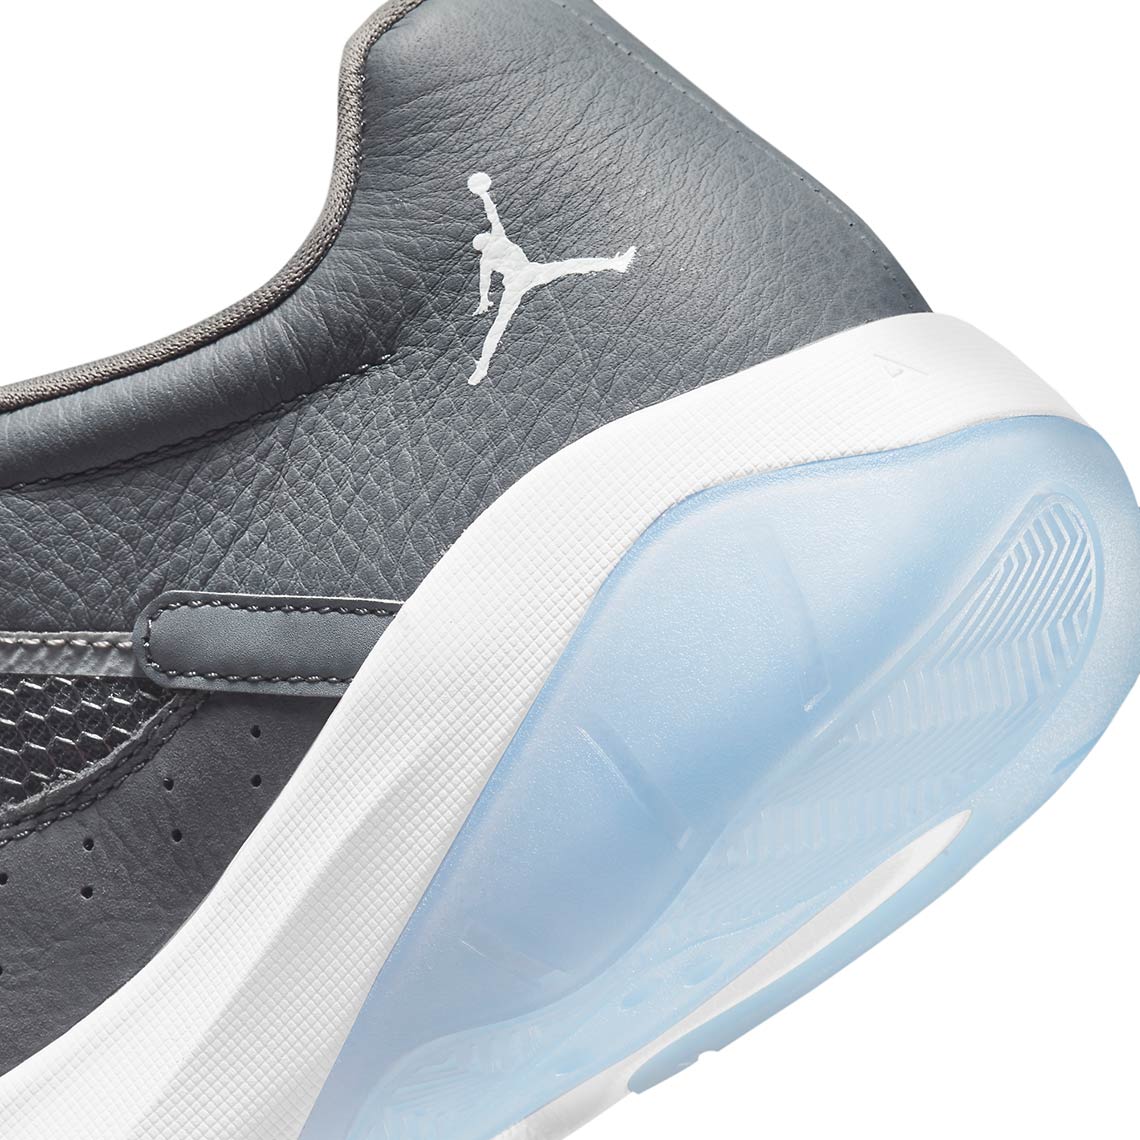 Air Jordan 11 CMFT Low Cool Grey CW0784-001 | SneakerNews.com